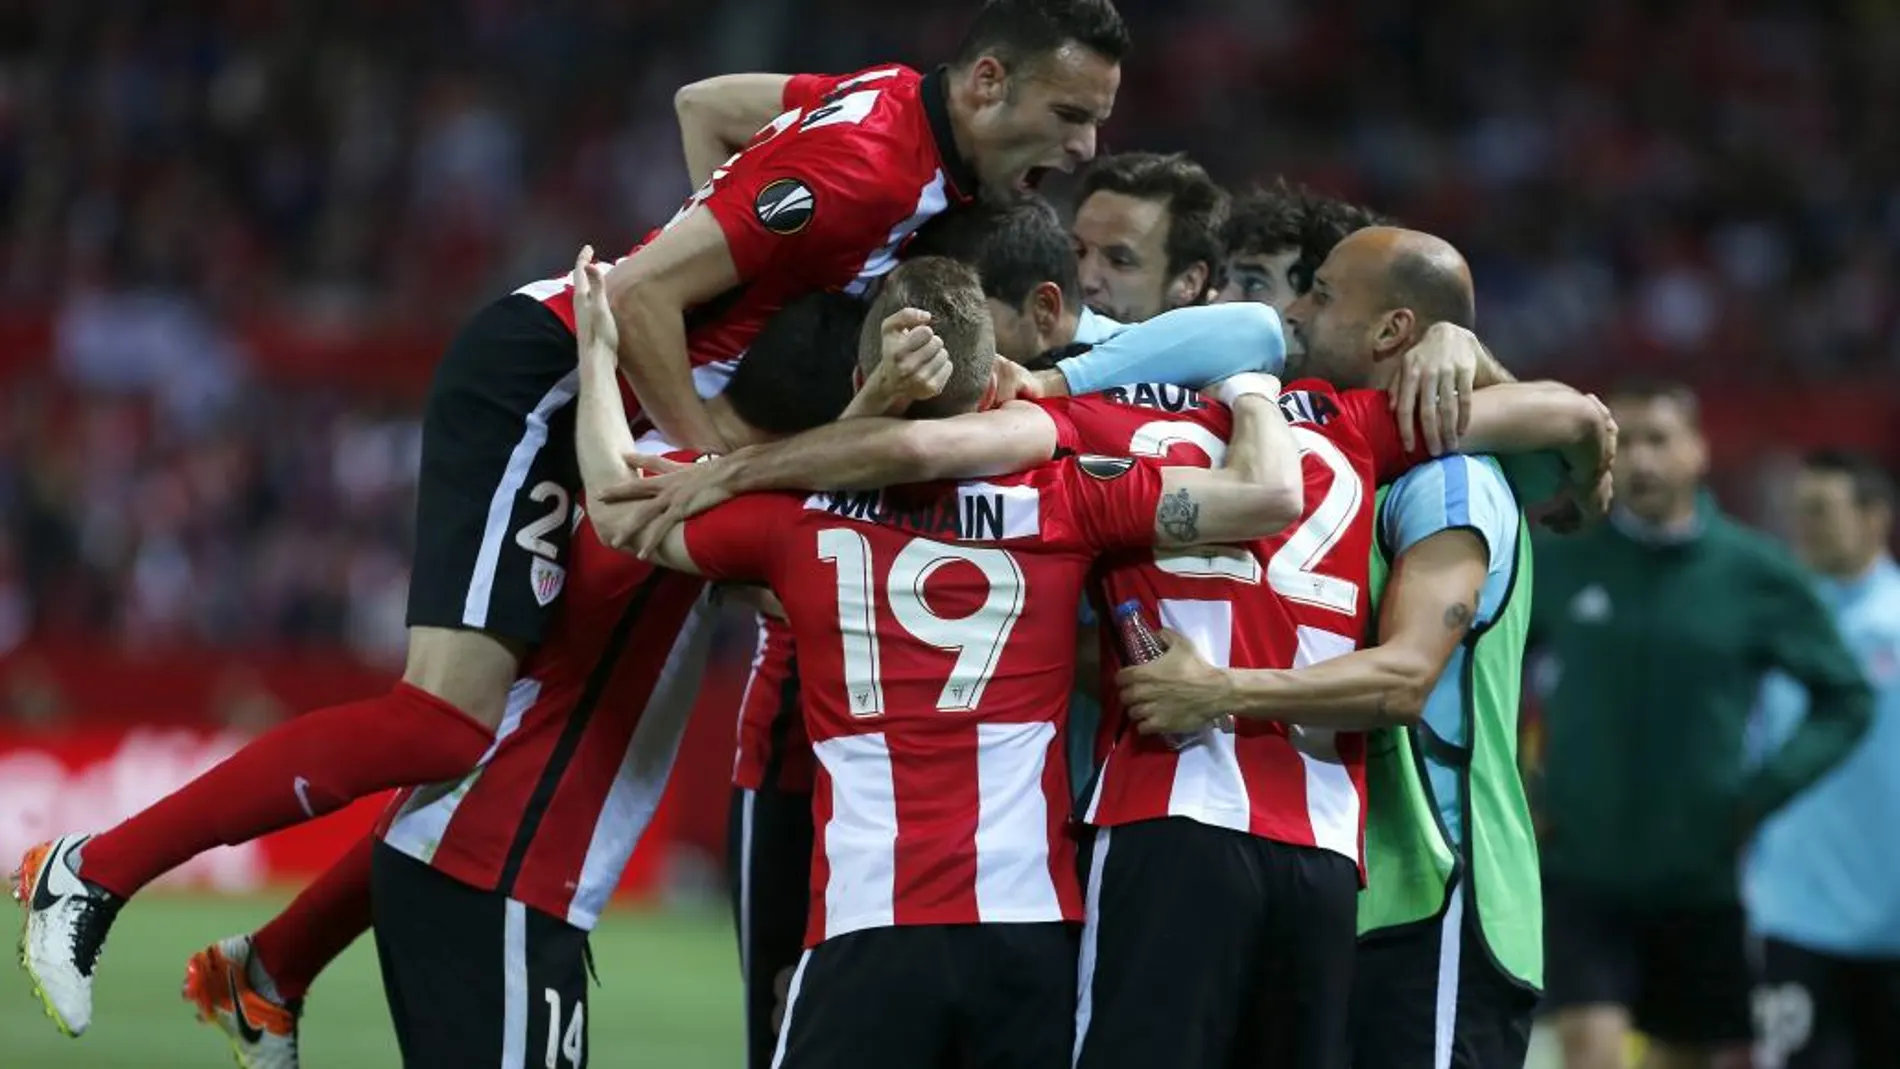 Los jugadores del Athletic de Bilbao celebran el segundo gol ante el Sevilla